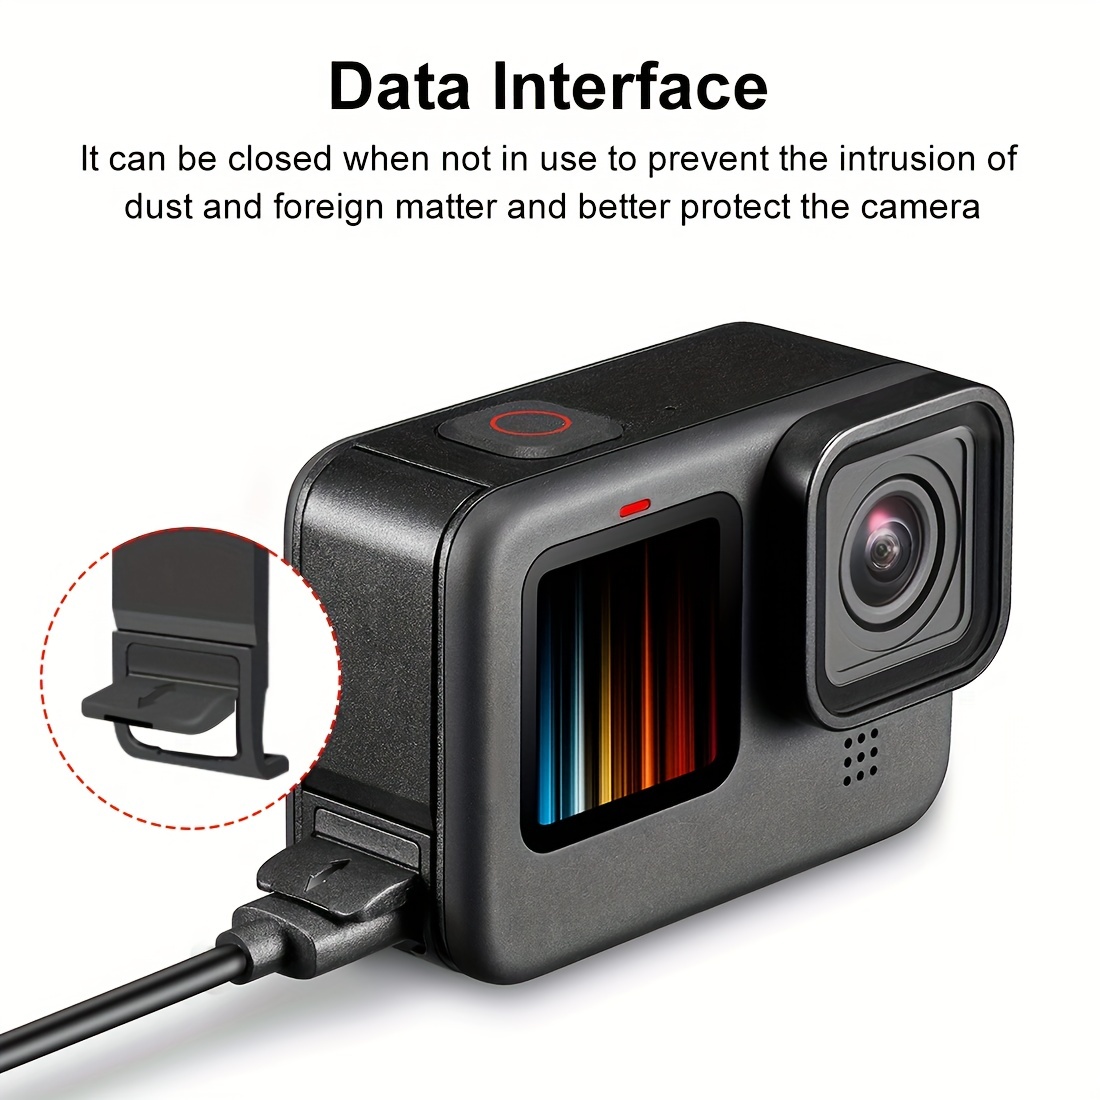 Couvercle de batterie de remplacement pour Gopro Hero 10/9 noir, accessoire  Vlog de porte latérale d'alimentation USB pour une caméra d'action gopro -  K&F Concept